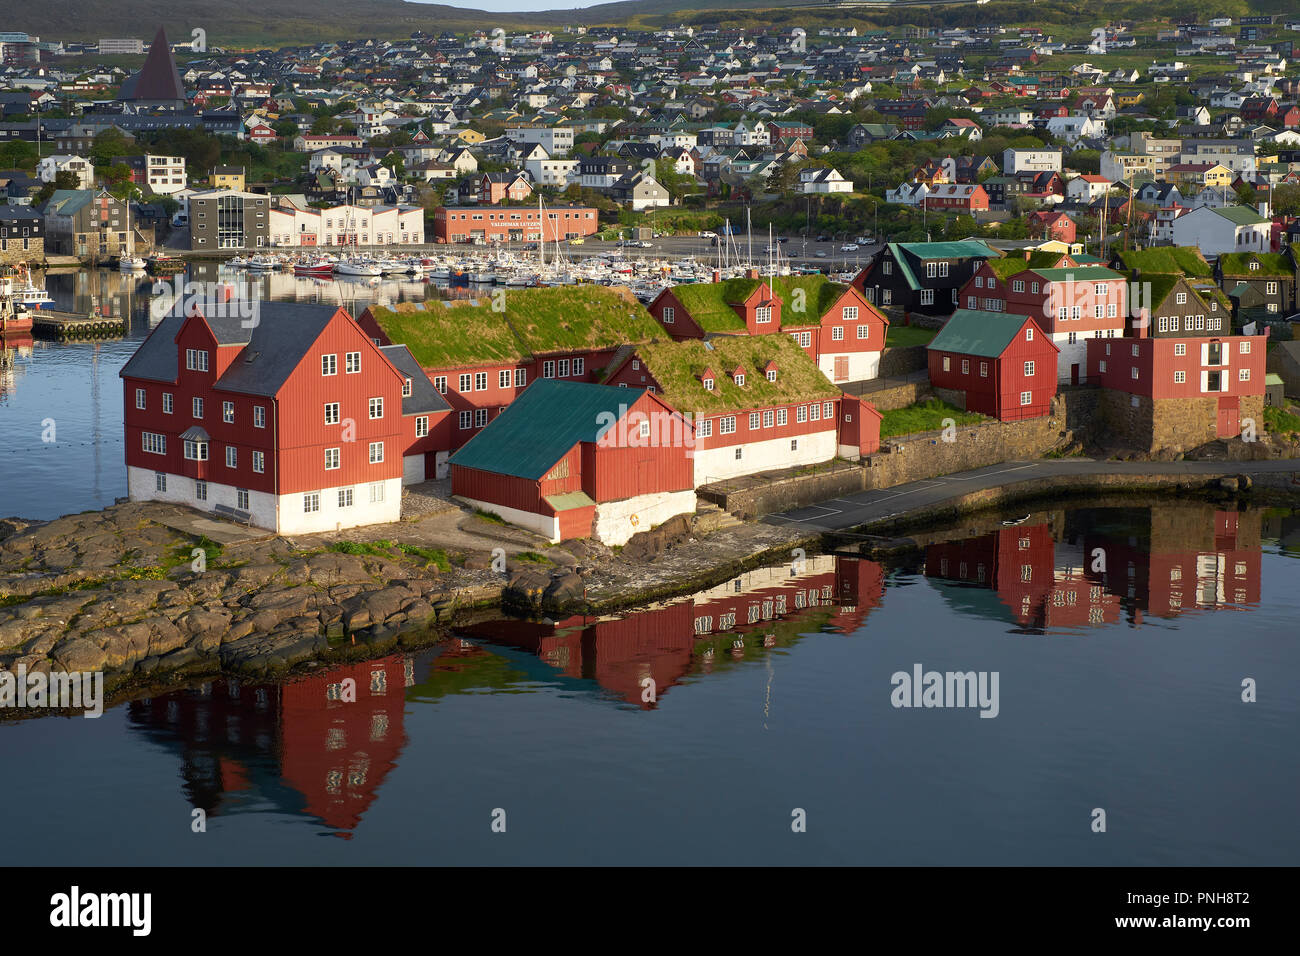 Tinganes la storica sede del governo delle Isole Faerøer e il porto di Tórshavn la capitale e la città più grande delle isole Faerøer. Foto Stock